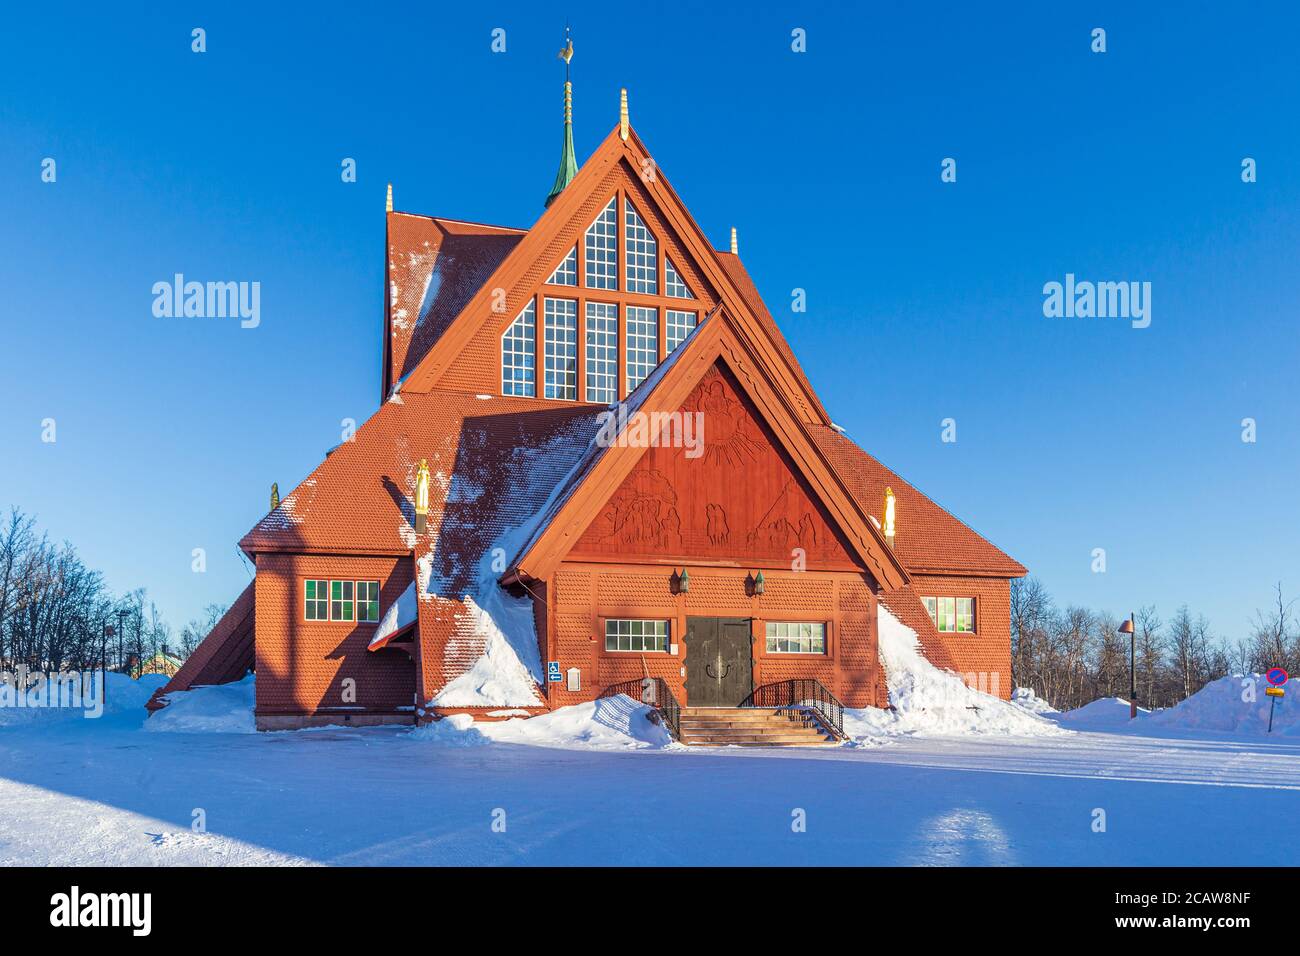 Kiruna church or Kiruna kyrka with beautiful blue sky - Sweden Stock Photo